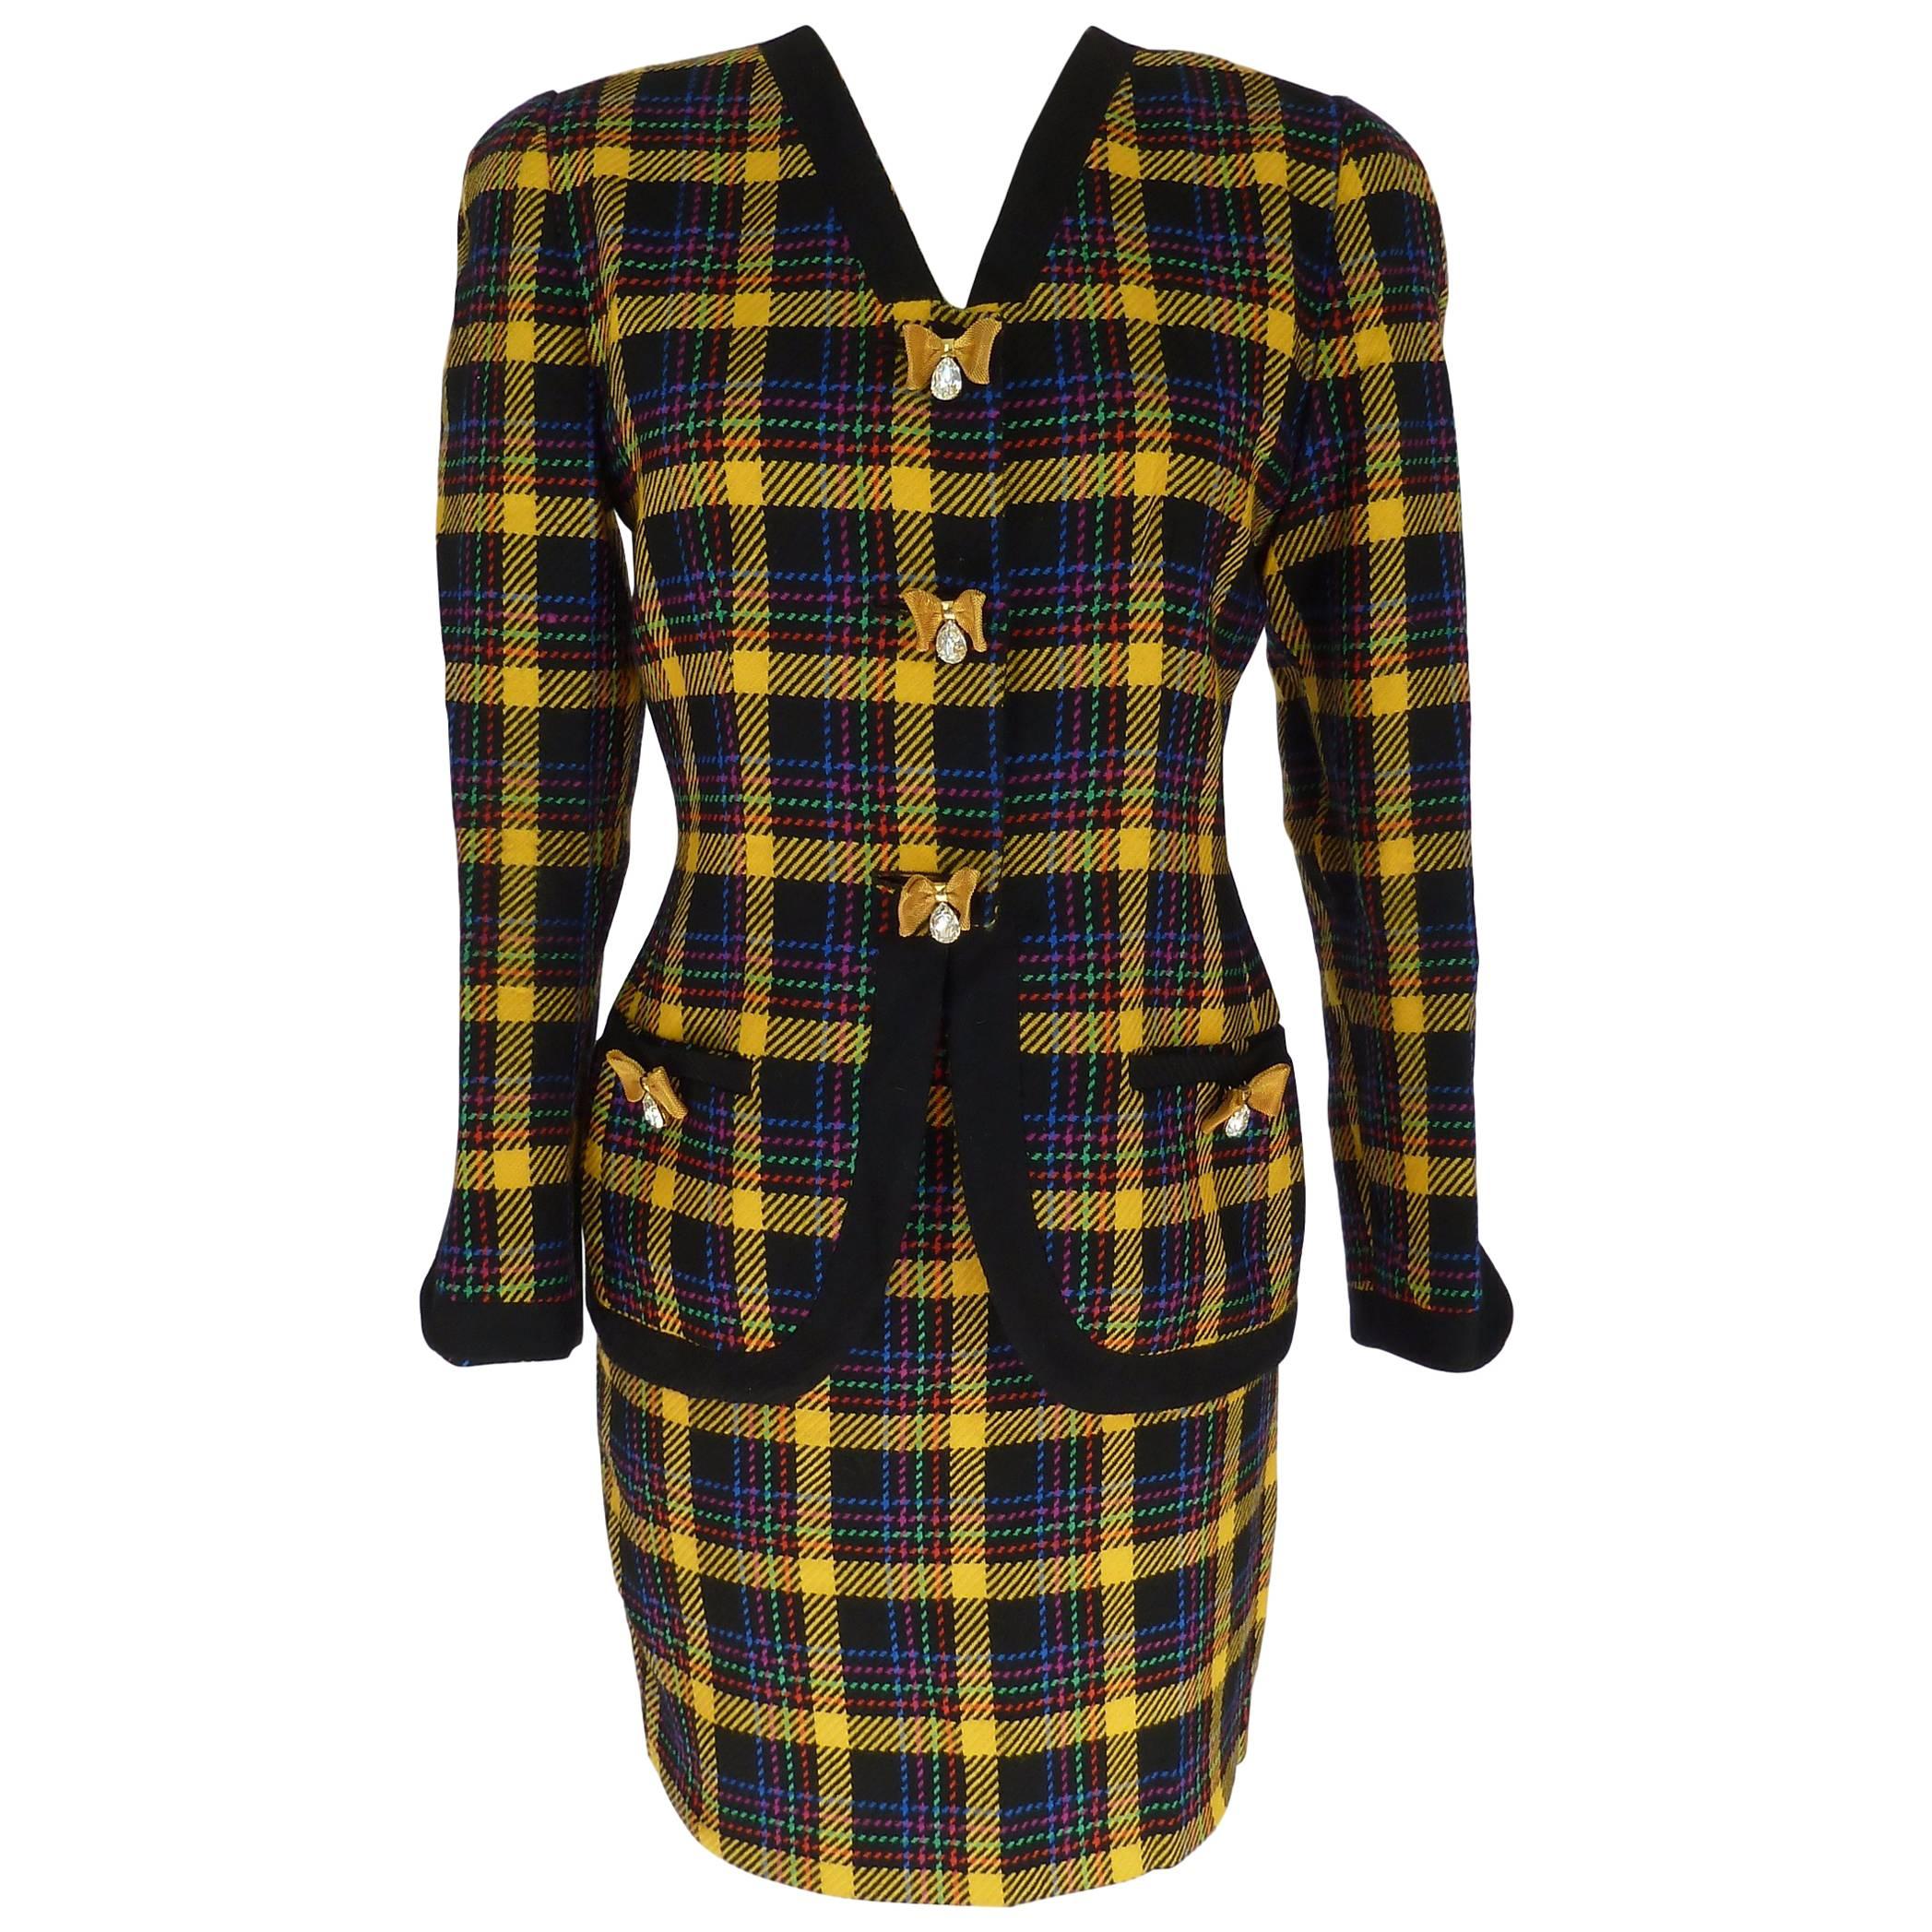 Gai Mattiolo 1980s set dress jacket skirt wool boucle check yellow blue size 42